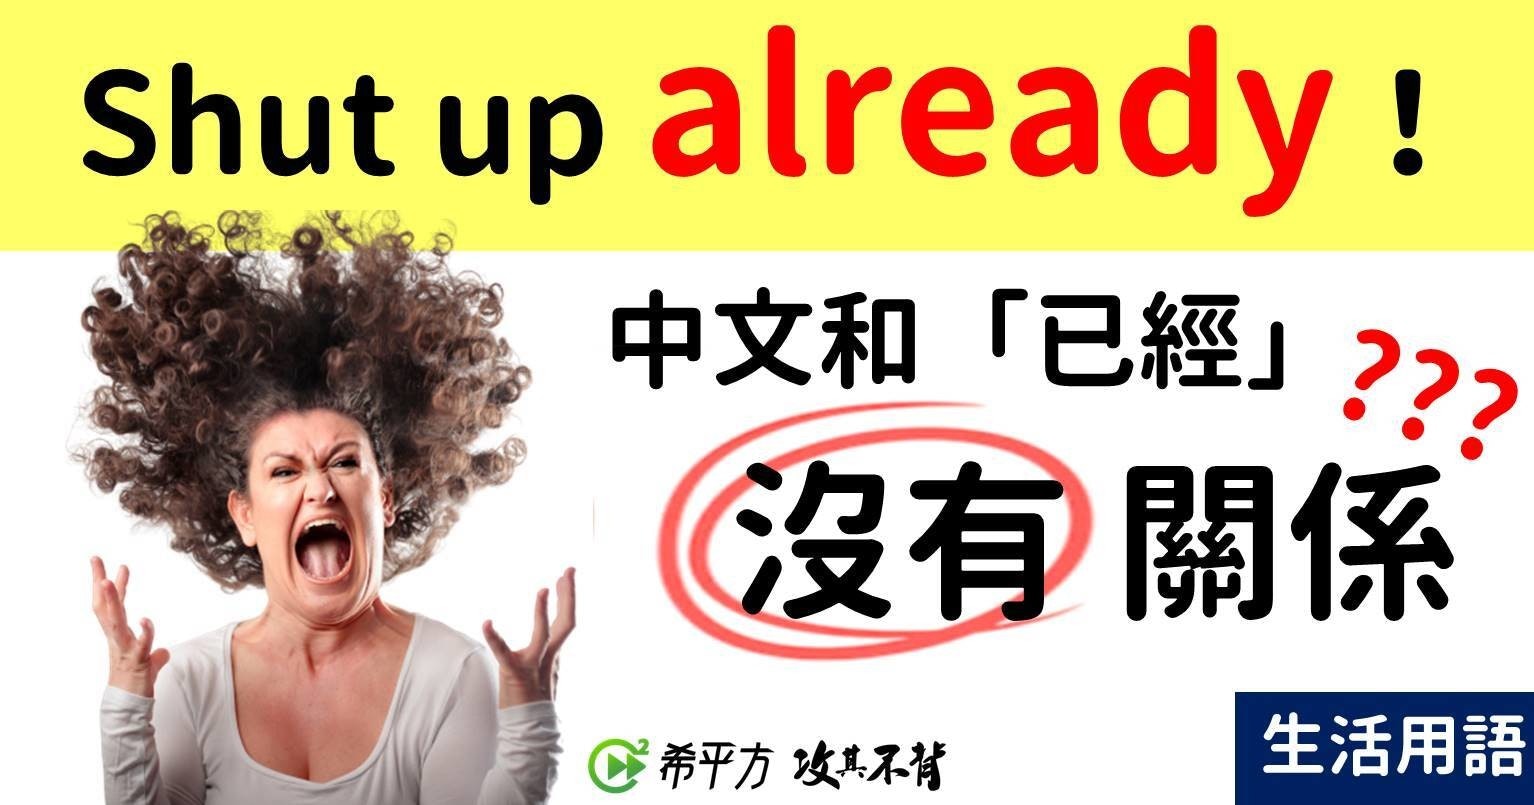 照片中提到了Shut up already !、中文和「已經」??2、沒有關係，包含了人類行為、情感、尖叫、平面設計、女人的形象